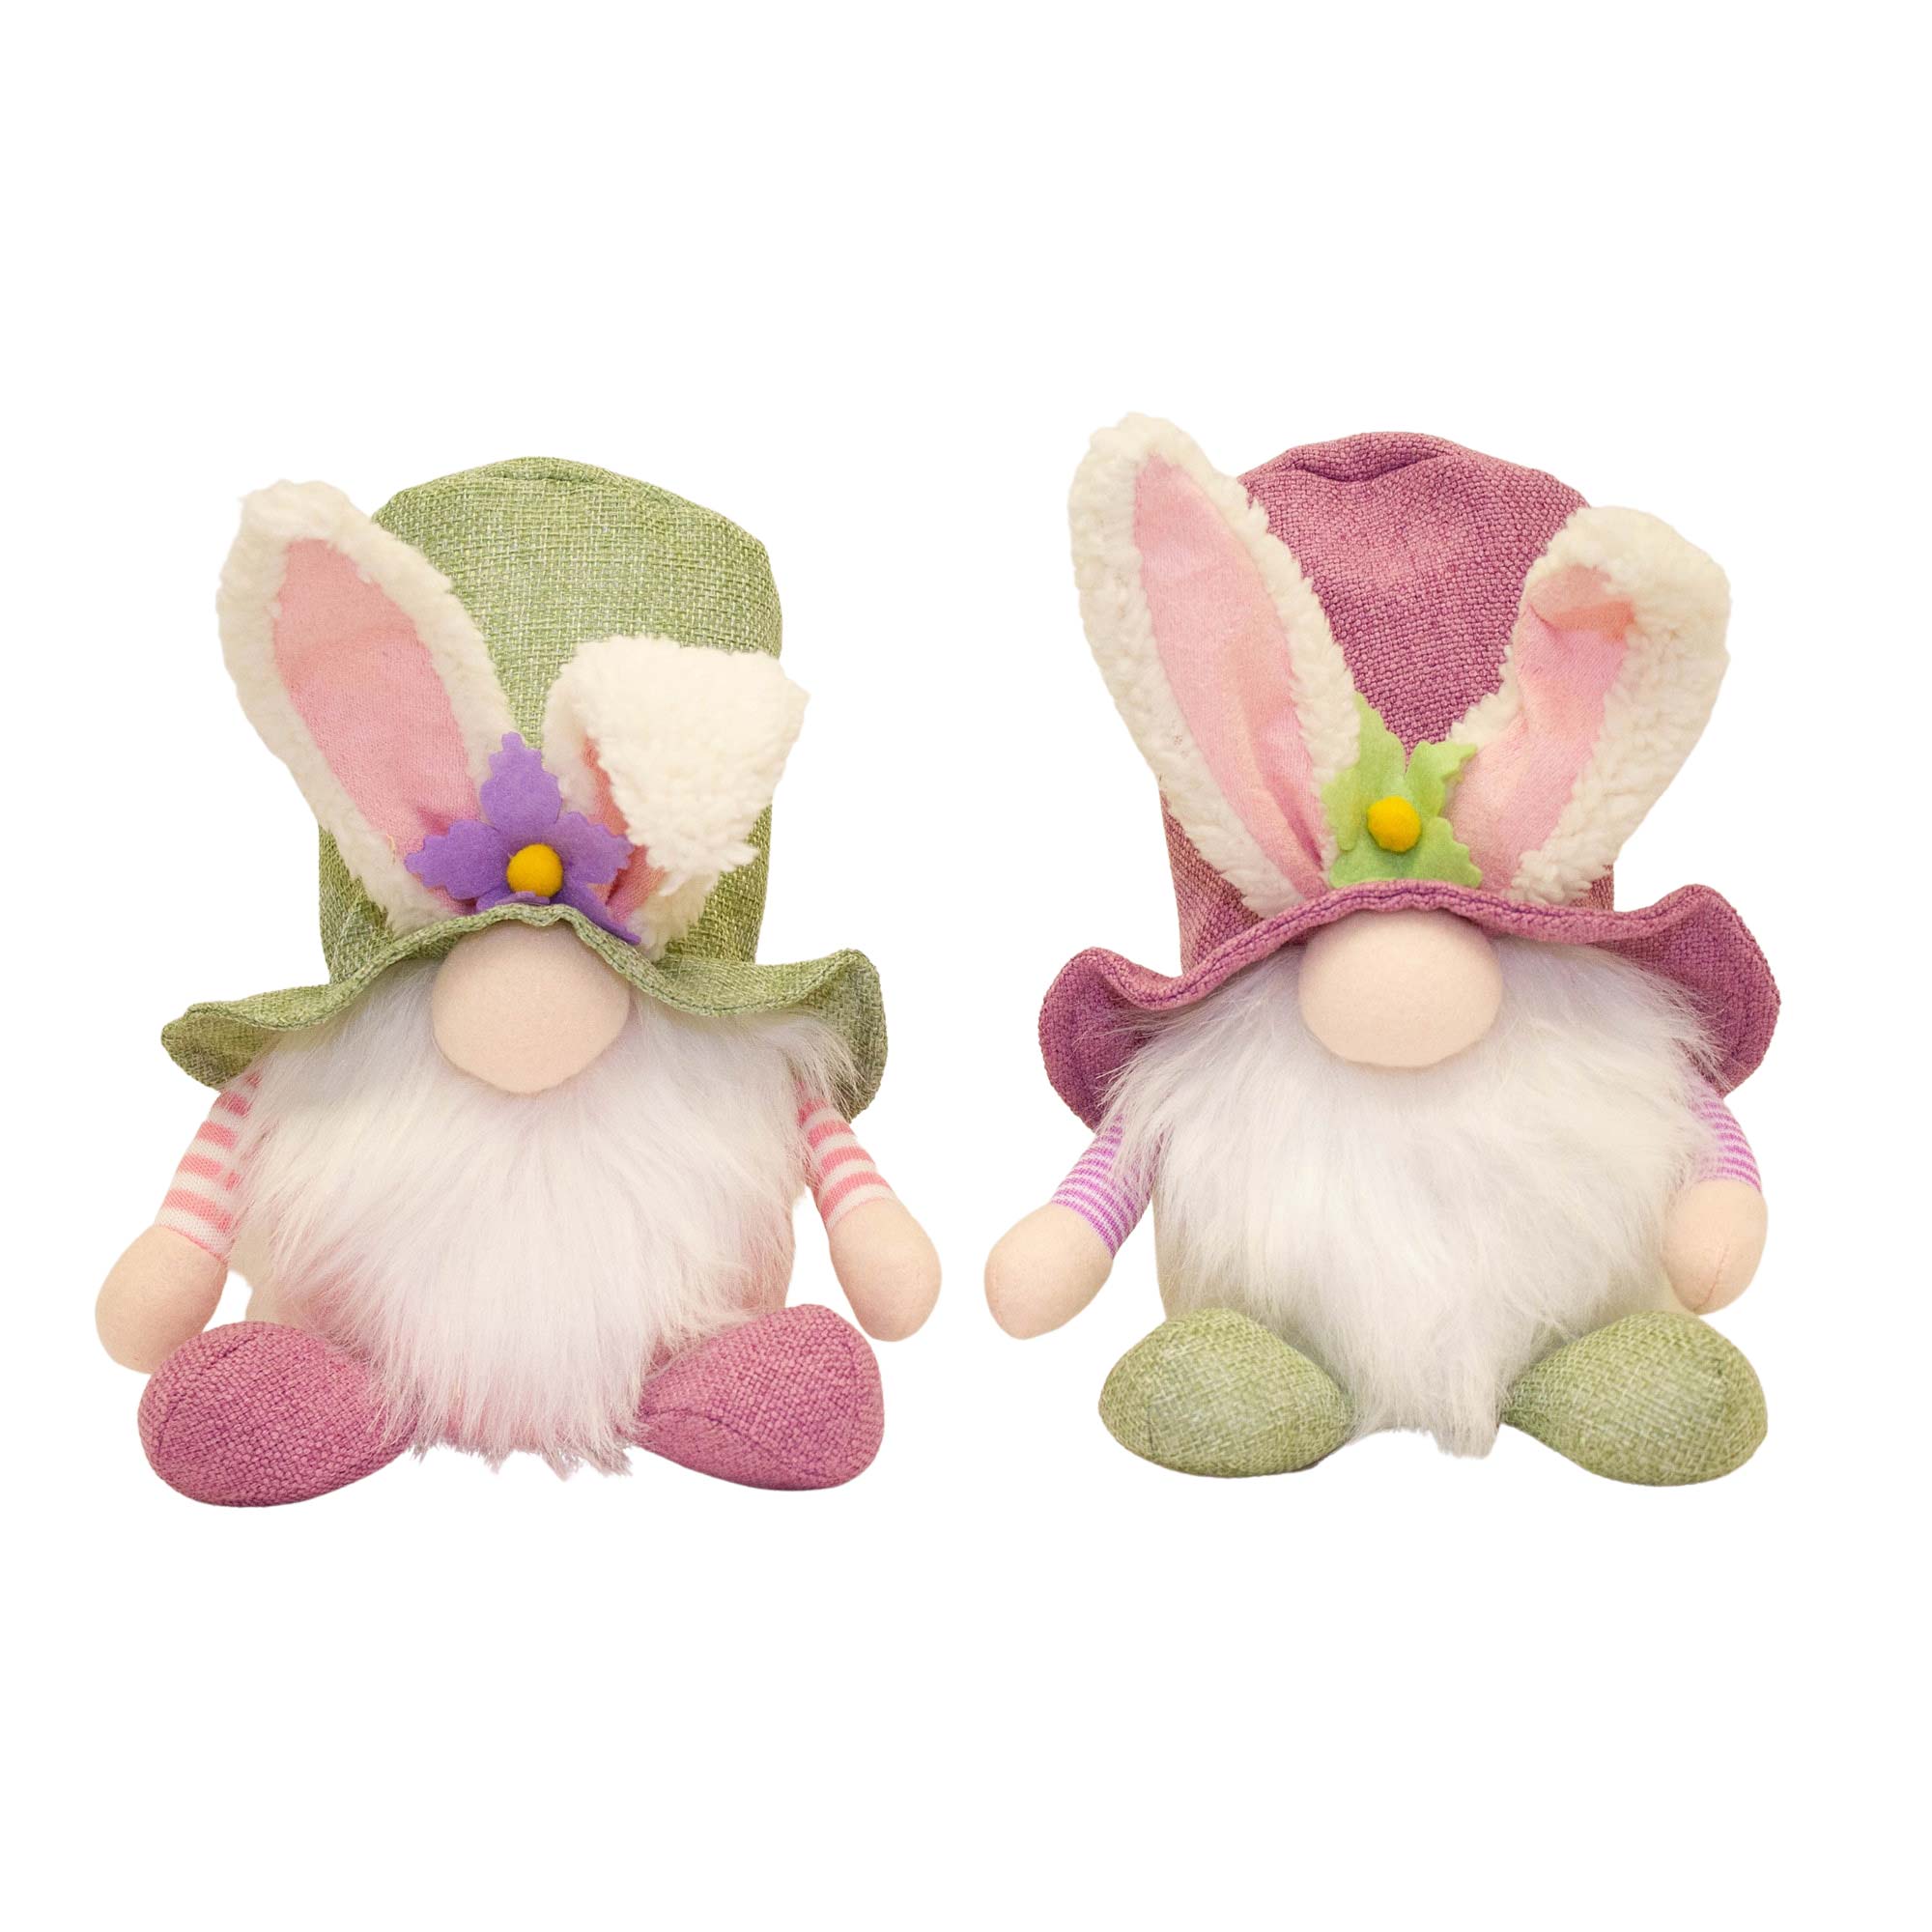 Mályva színű zsákvászonból készült, nyuszifülekkel díszített kalapot viselő, 22 cm magas, mókás húsvéti textil manó figura.